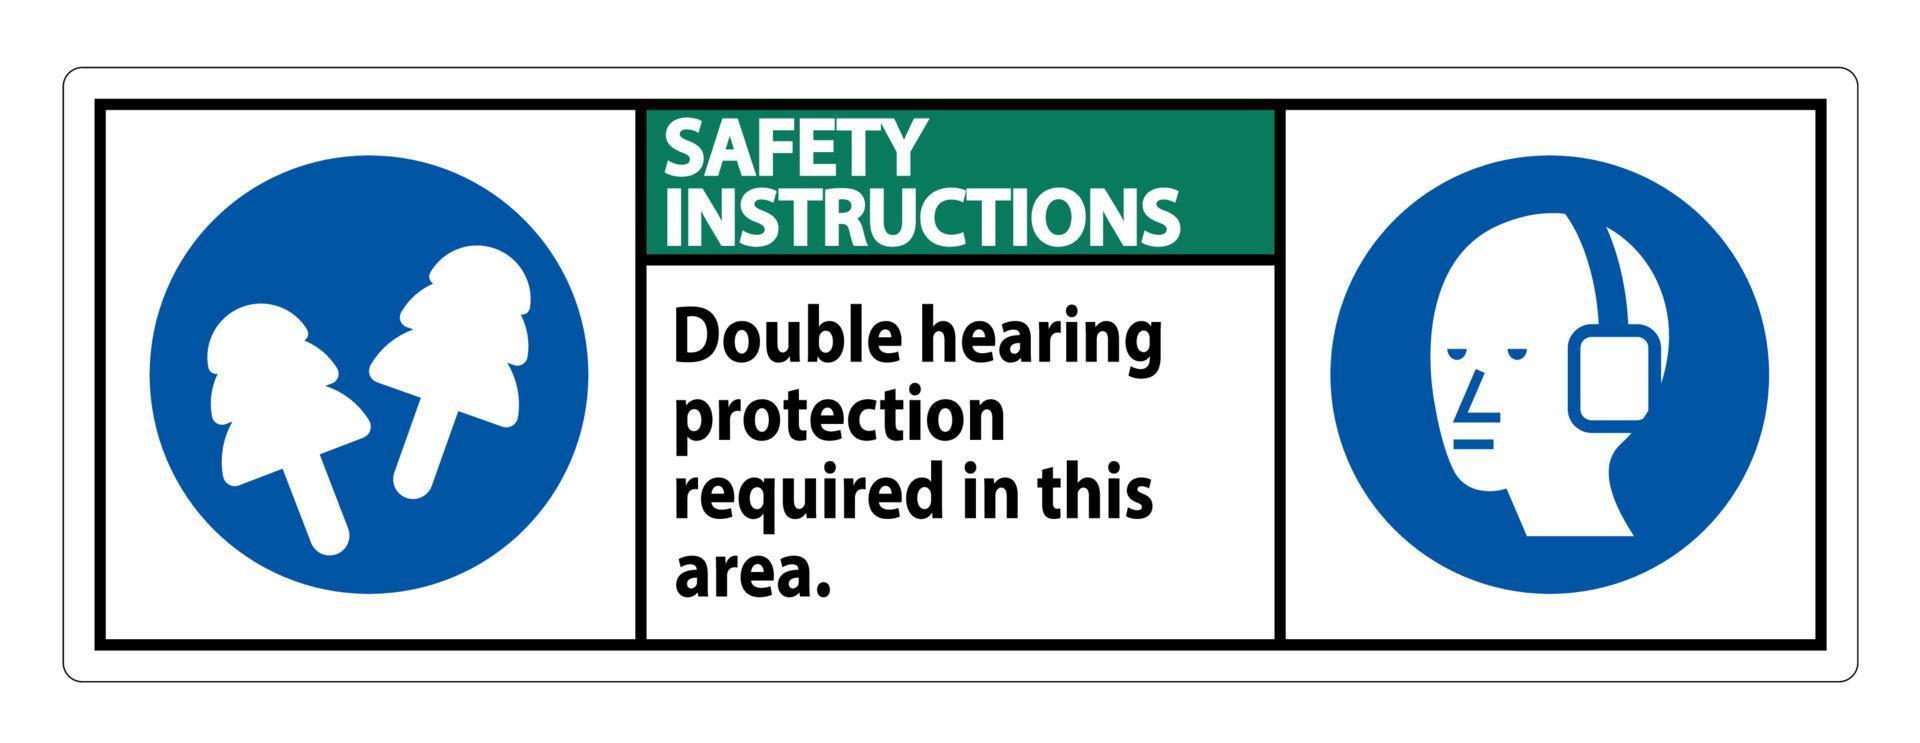 istruzioni di sicurezza firmare una doppia protezione dell'udito richiesta in quest'area con cuffie e tappi per le orecchie vettore